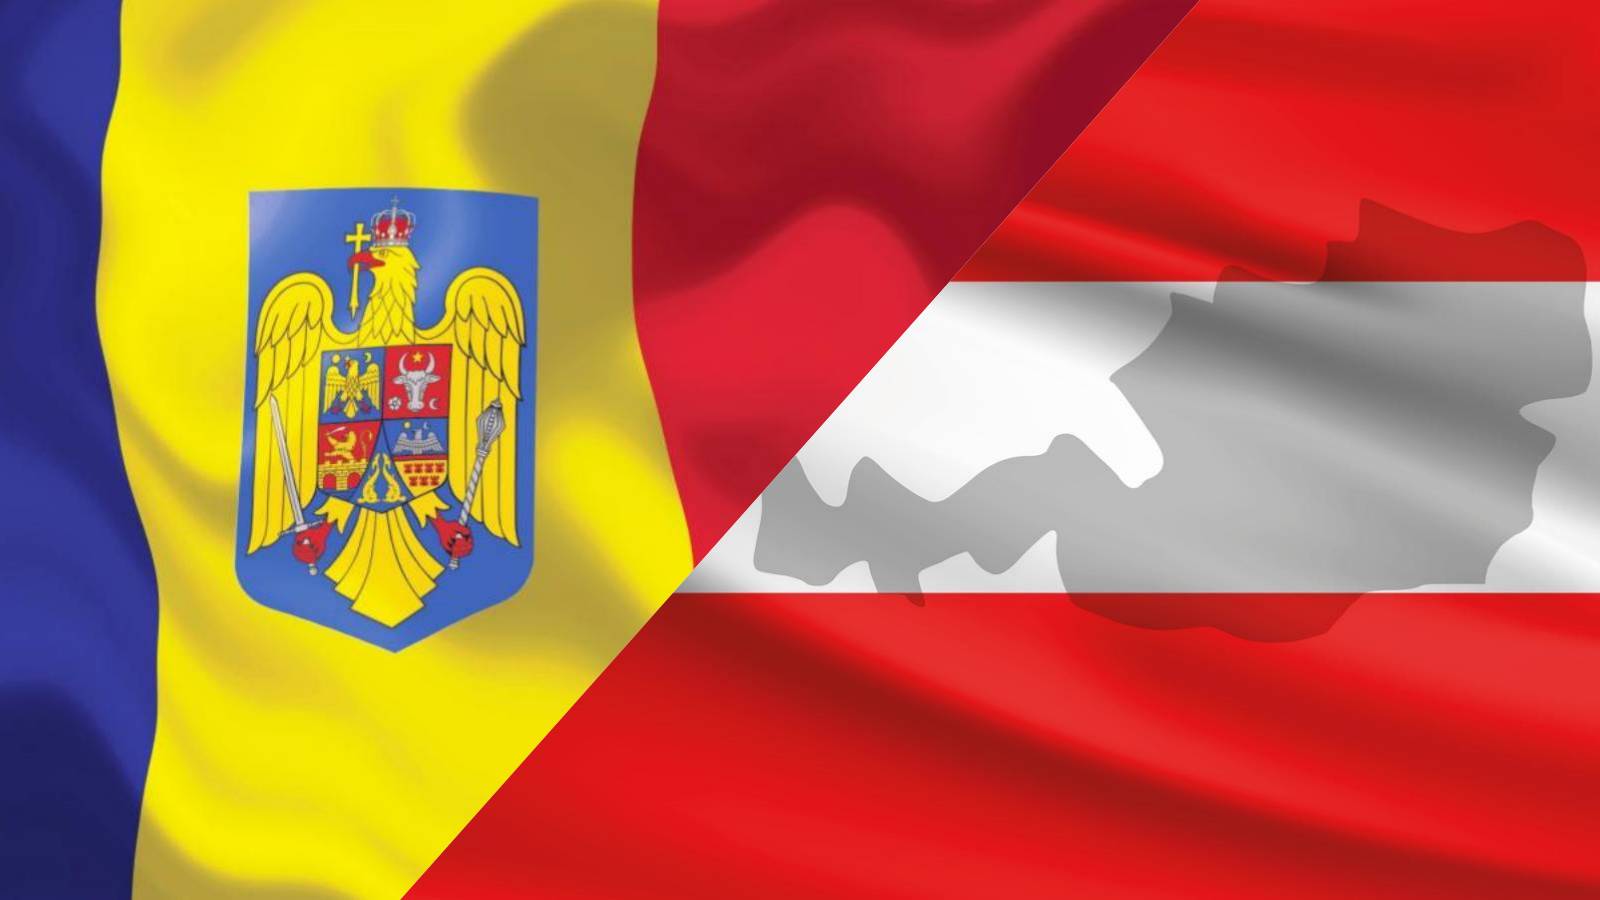 LAST MINUTE-aankondiging van Oostenrijk Officiële Schengentoetredingsmaatregelen voor Roemenië